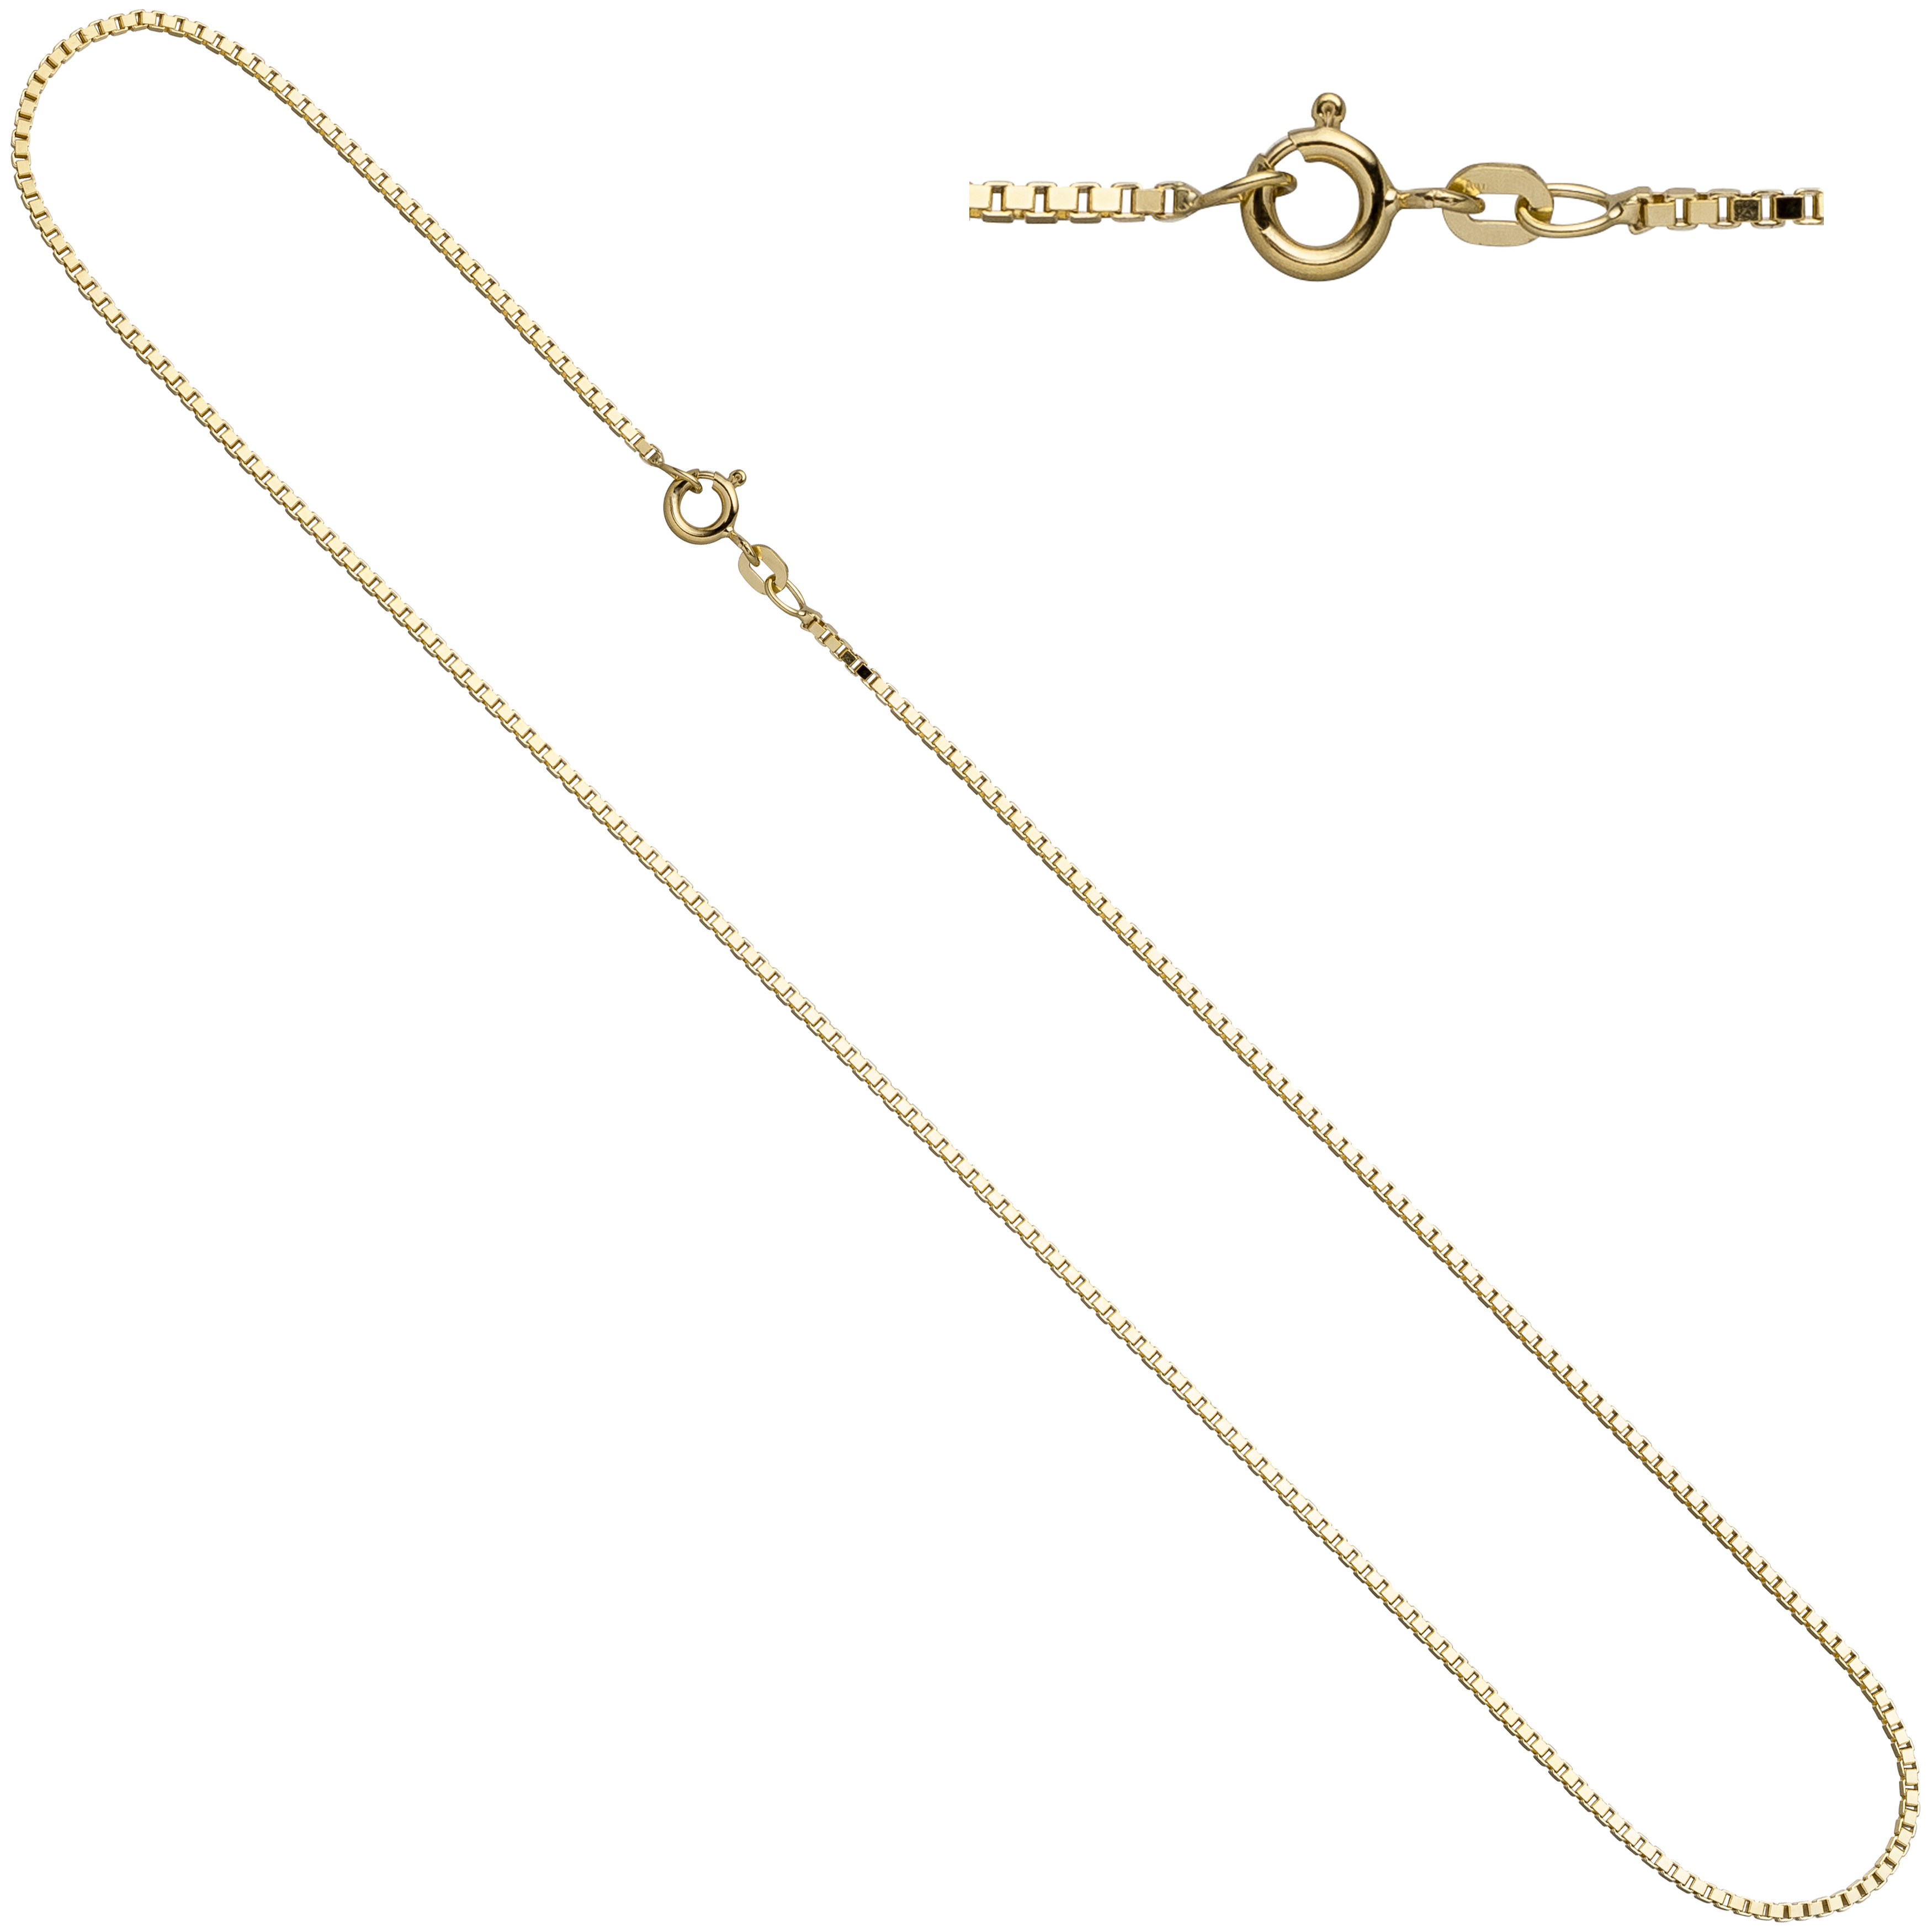 Venezianerkette 333 Gelbgold diamantiert 1,0 mm 42 cm Gold Halskette Karabiner